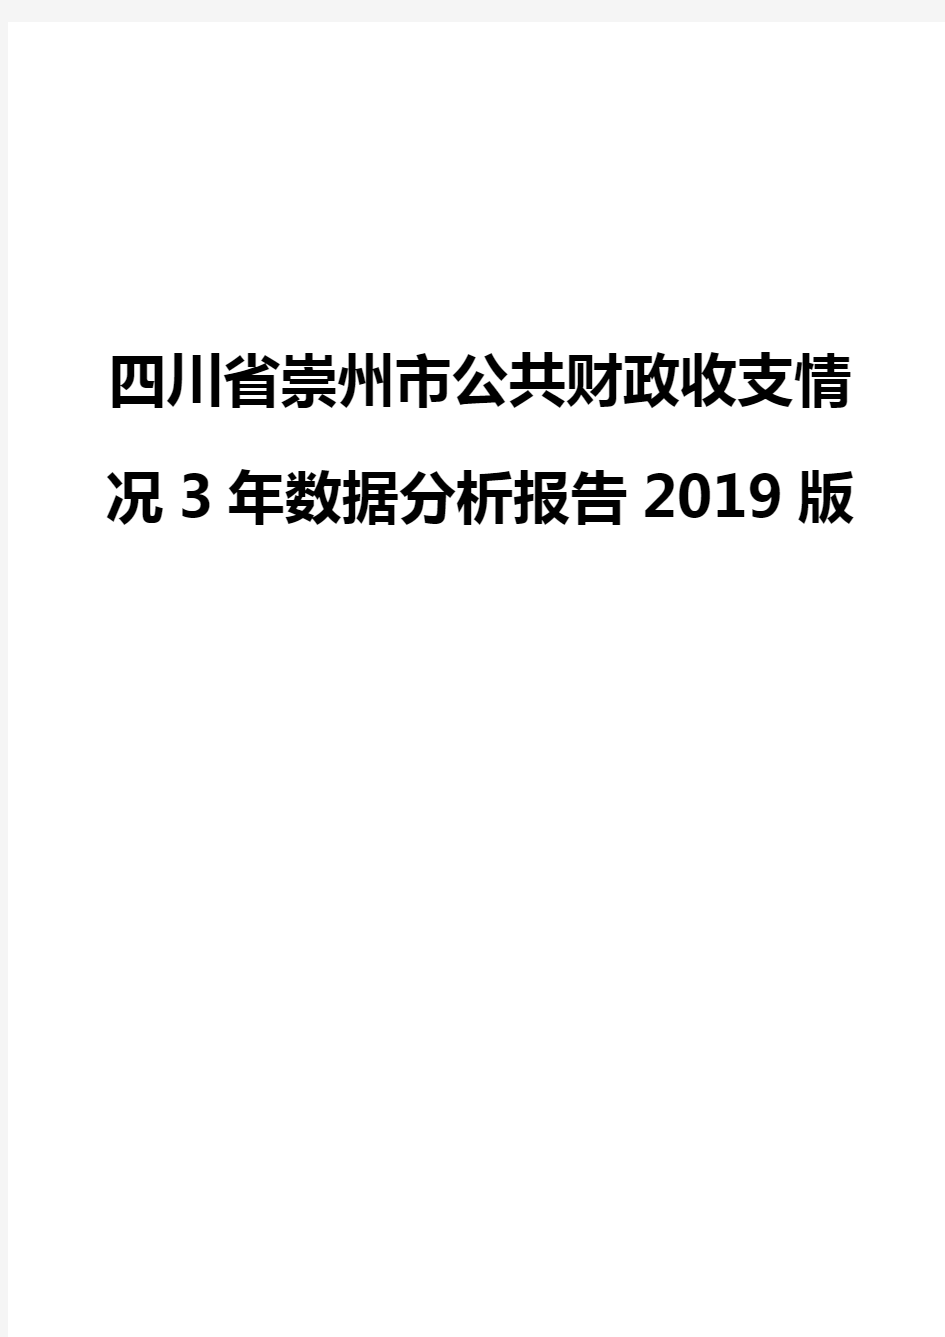 四川省崇州市公共财政收支情况3年数据分析报告2019版